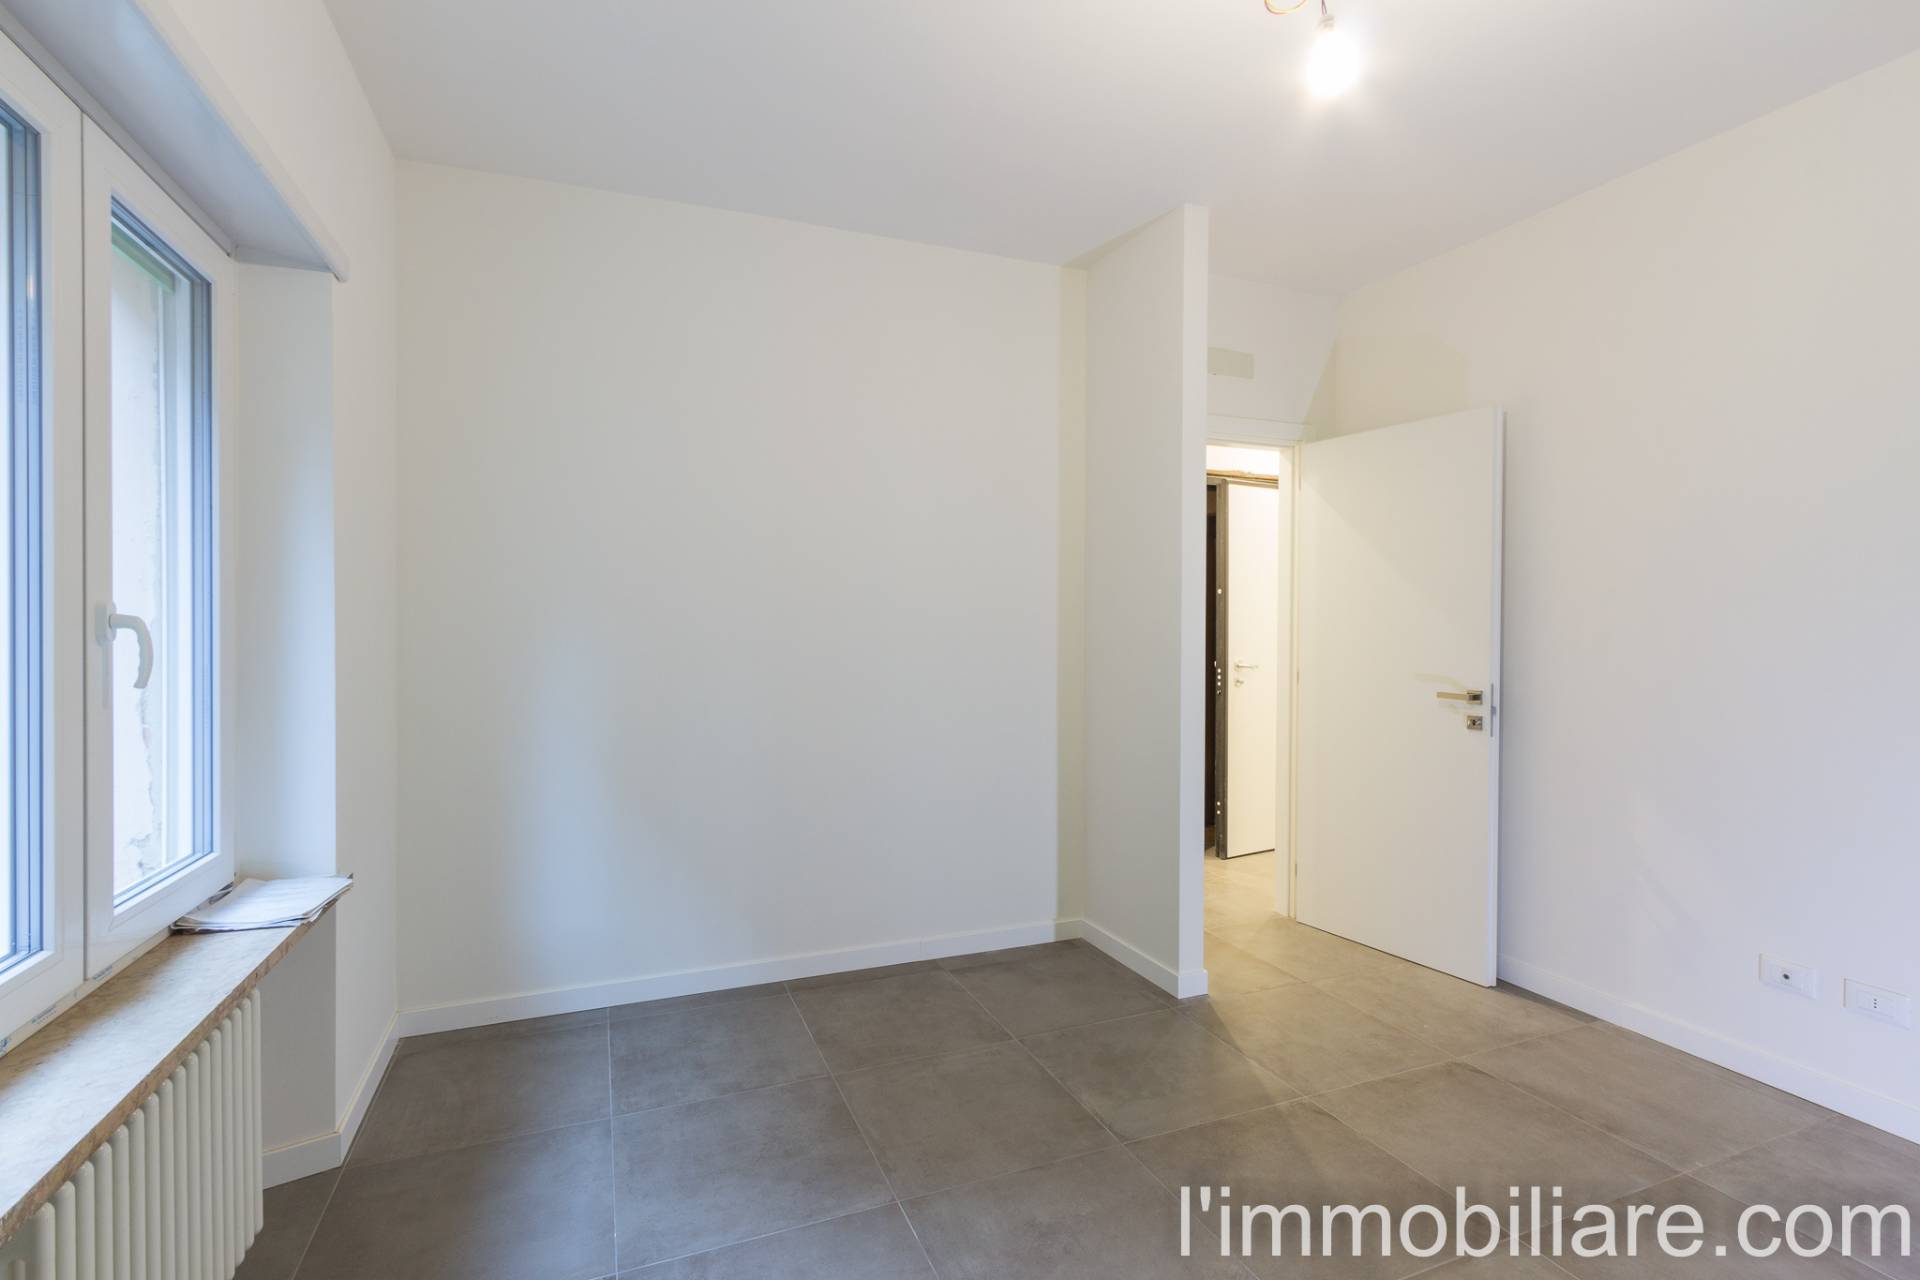 Appartamento in Vendita a Verona: 3 locali, 85 mq - Foto 10